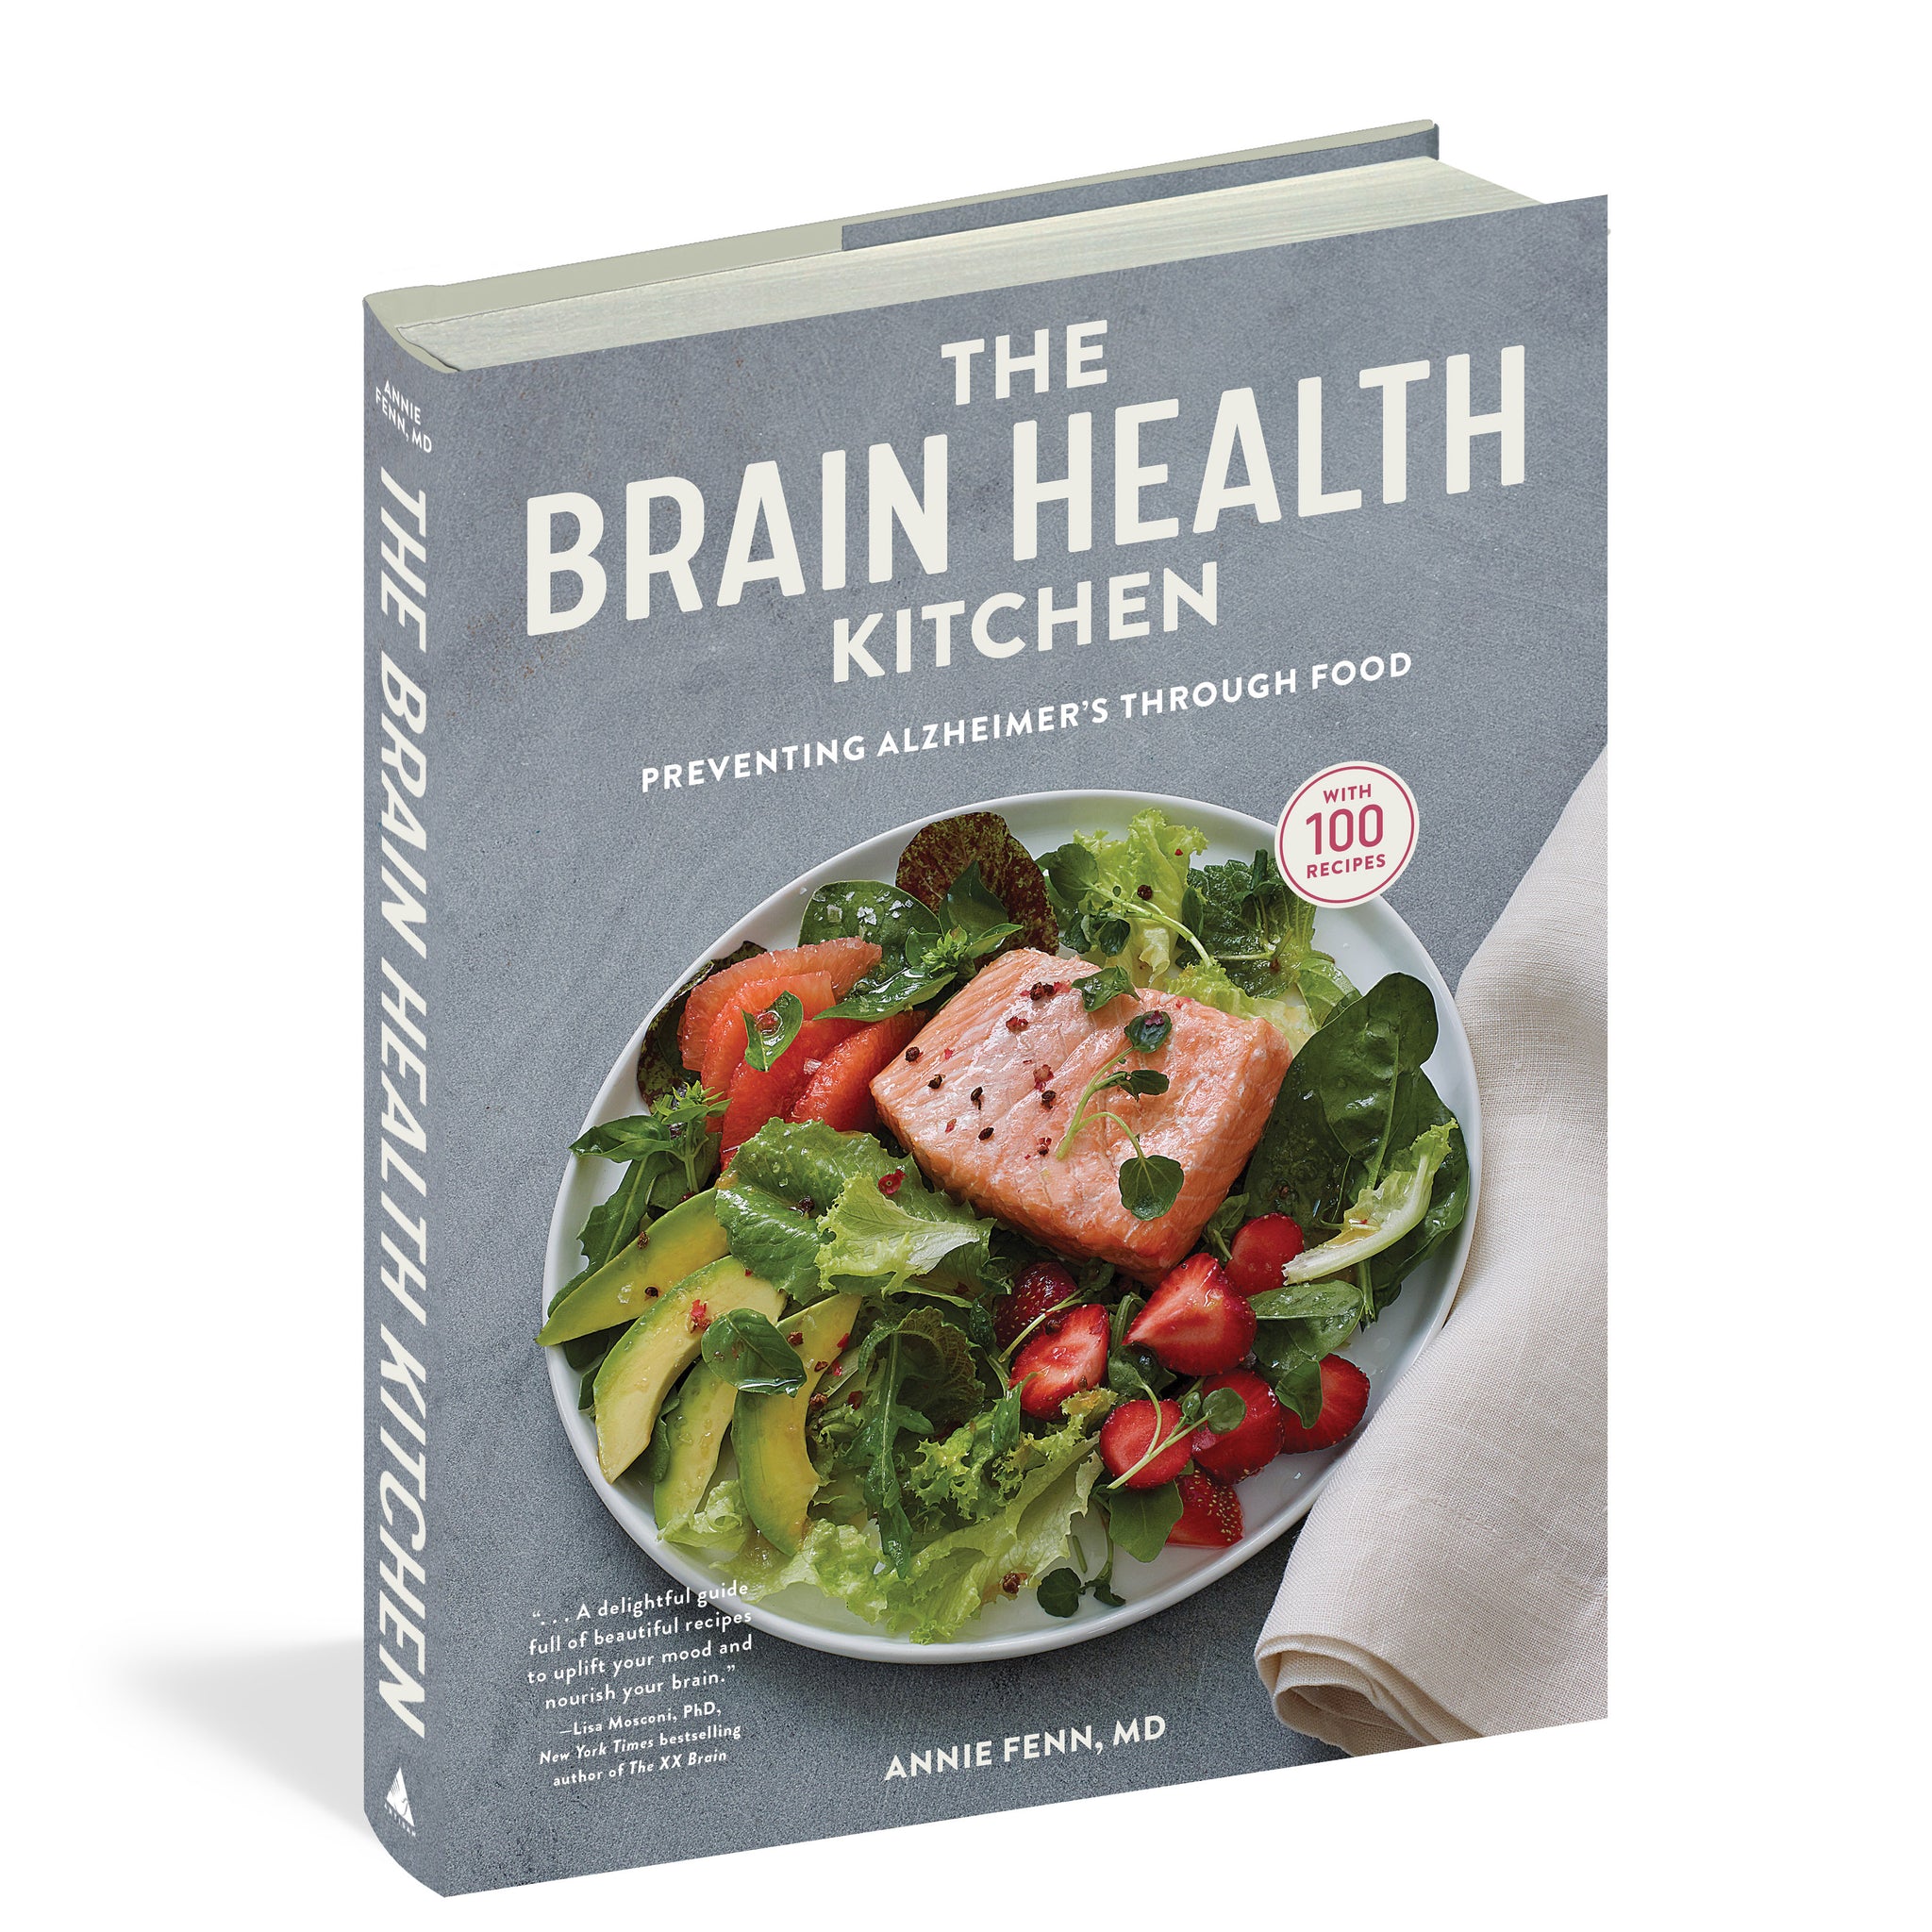 The Brain Health Kitchen: Preventing Alzheimer’s Through Food